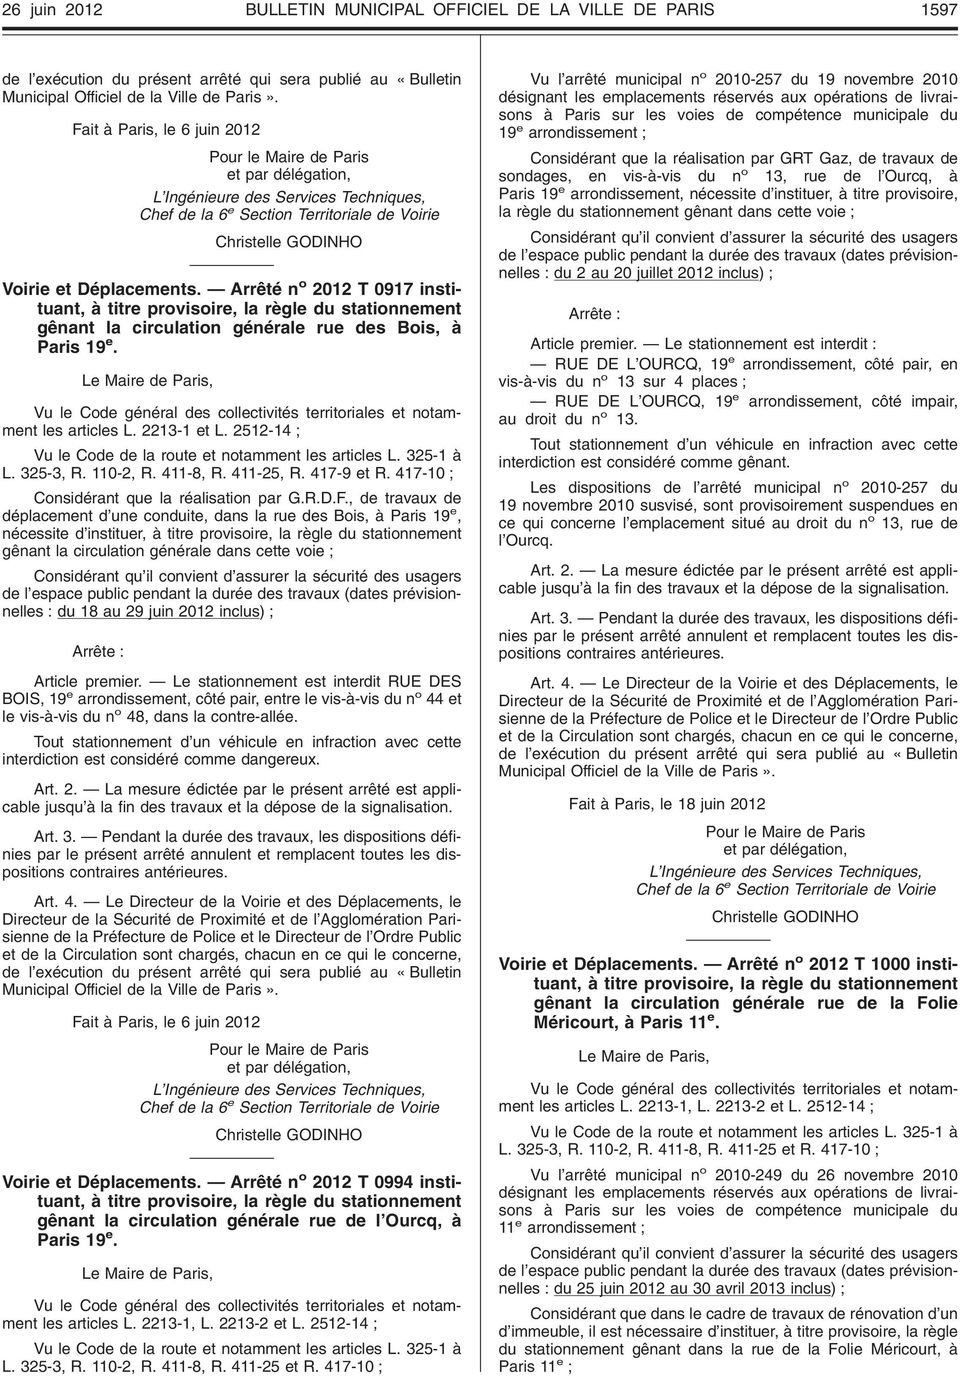 Arrêté n o 2012 T 0917 instituant, à titre provisoire, la règle du stationnement gênant la circulation générale rue des Bois, à Paris 19 e. les articles L. 2213-1 et L. 2512-14 L. 325-3, R. 110-2, R.